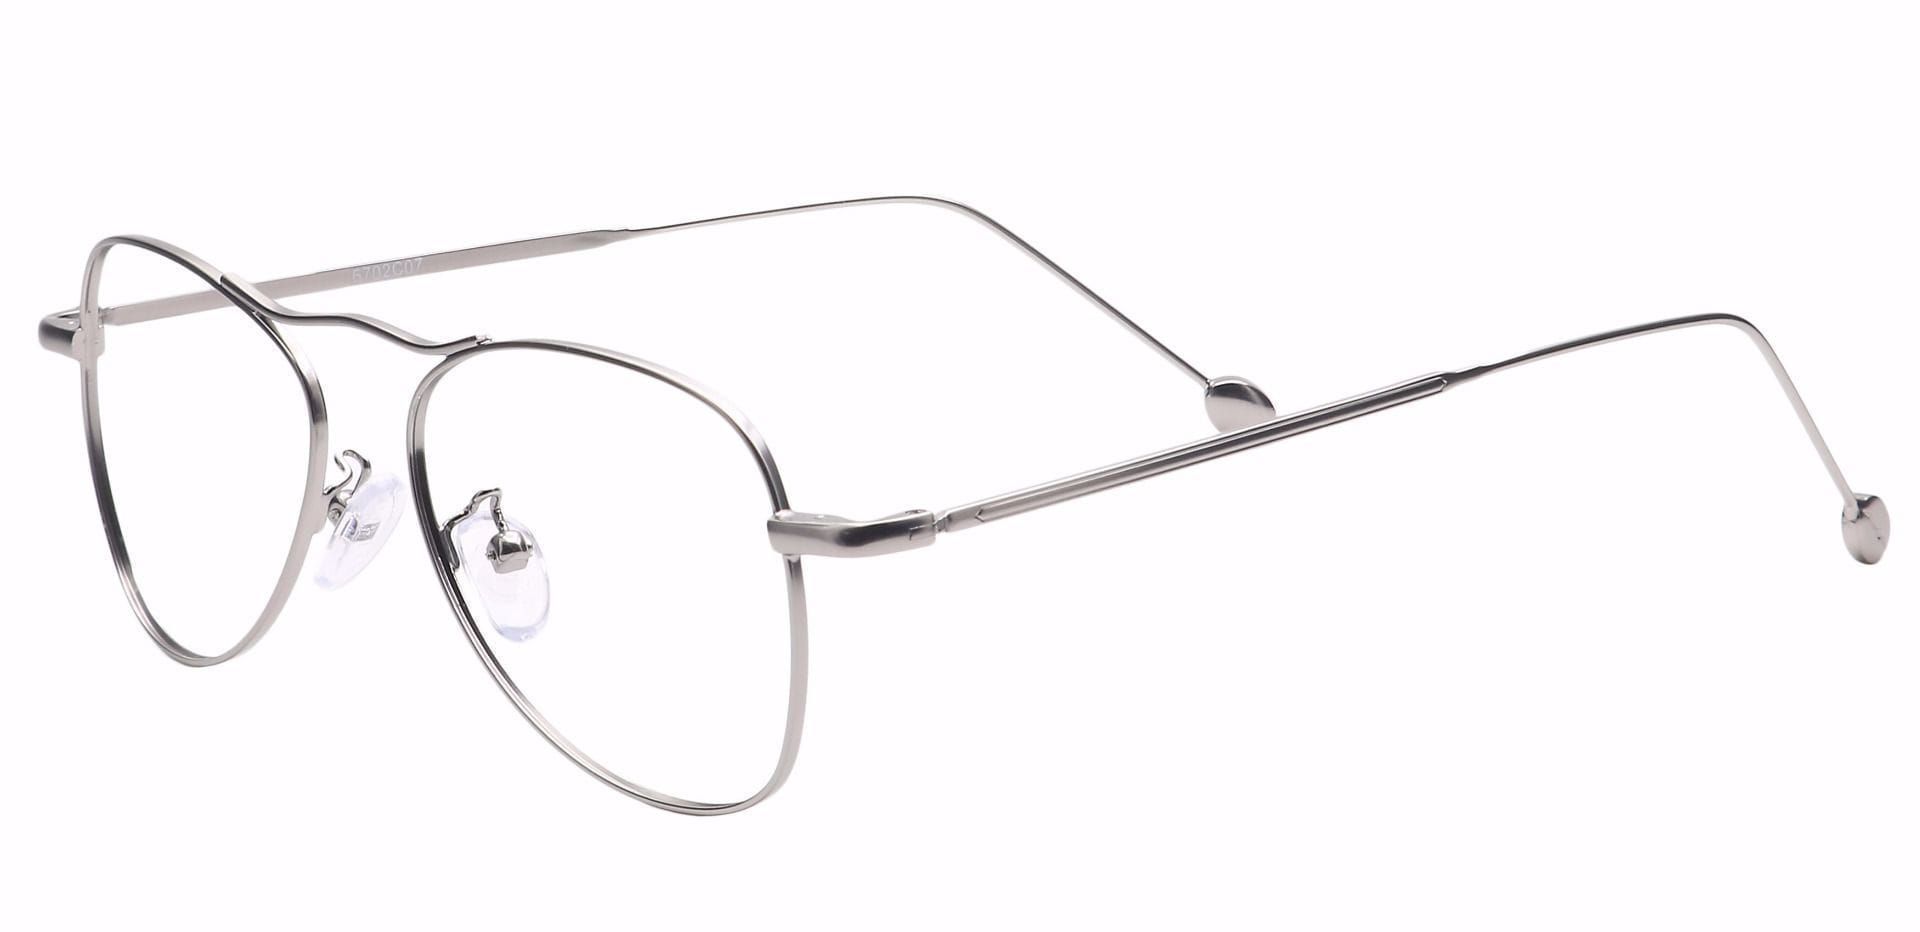 Brio Aviator Prescription Glasses - Silver